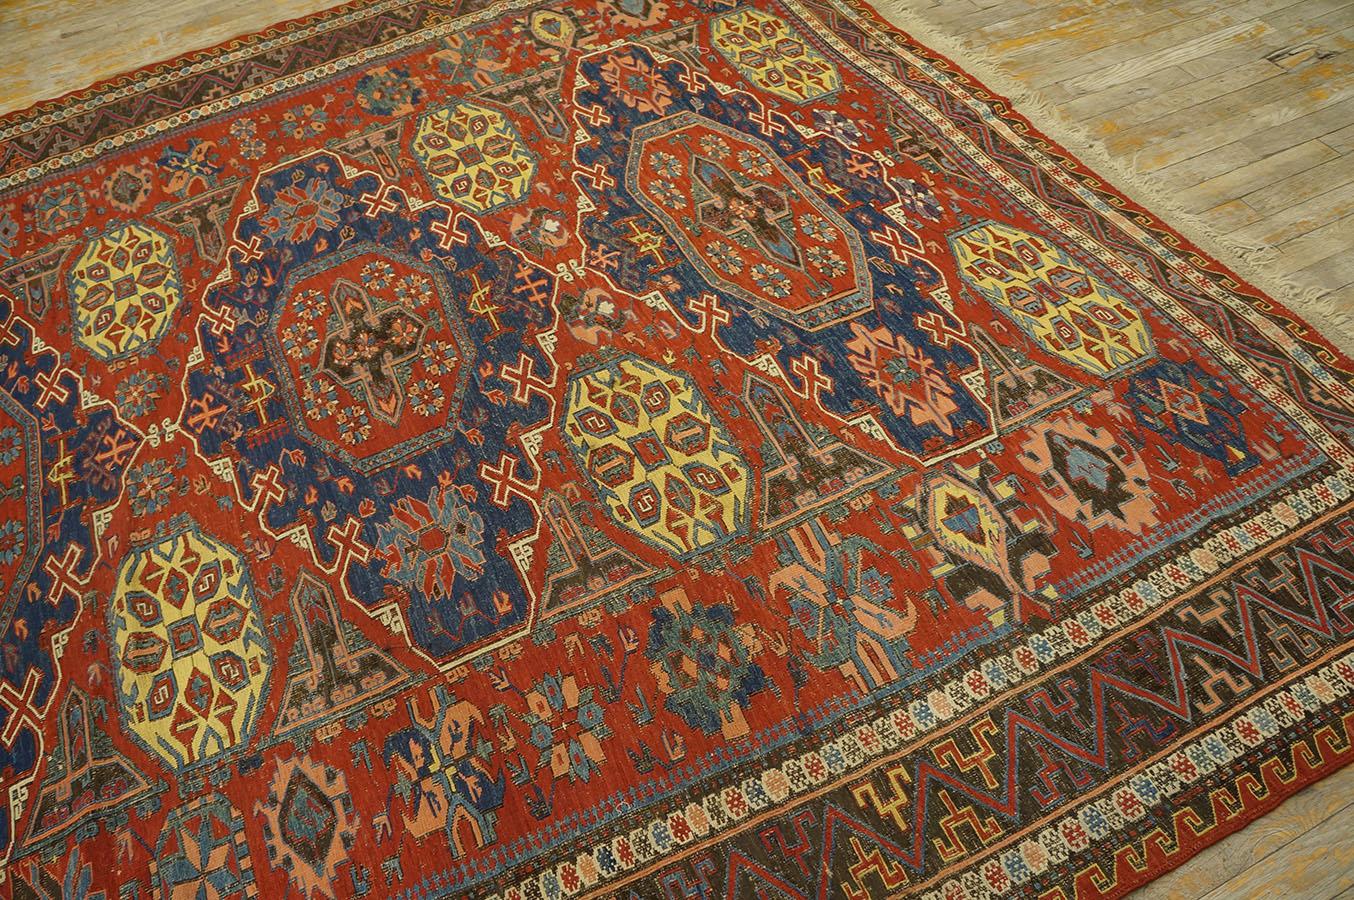 Late 19th Century Caucasian Soumak Flat-weave Carpet (7'6'' x 9 - 228 x 274 cm) For Sale 8